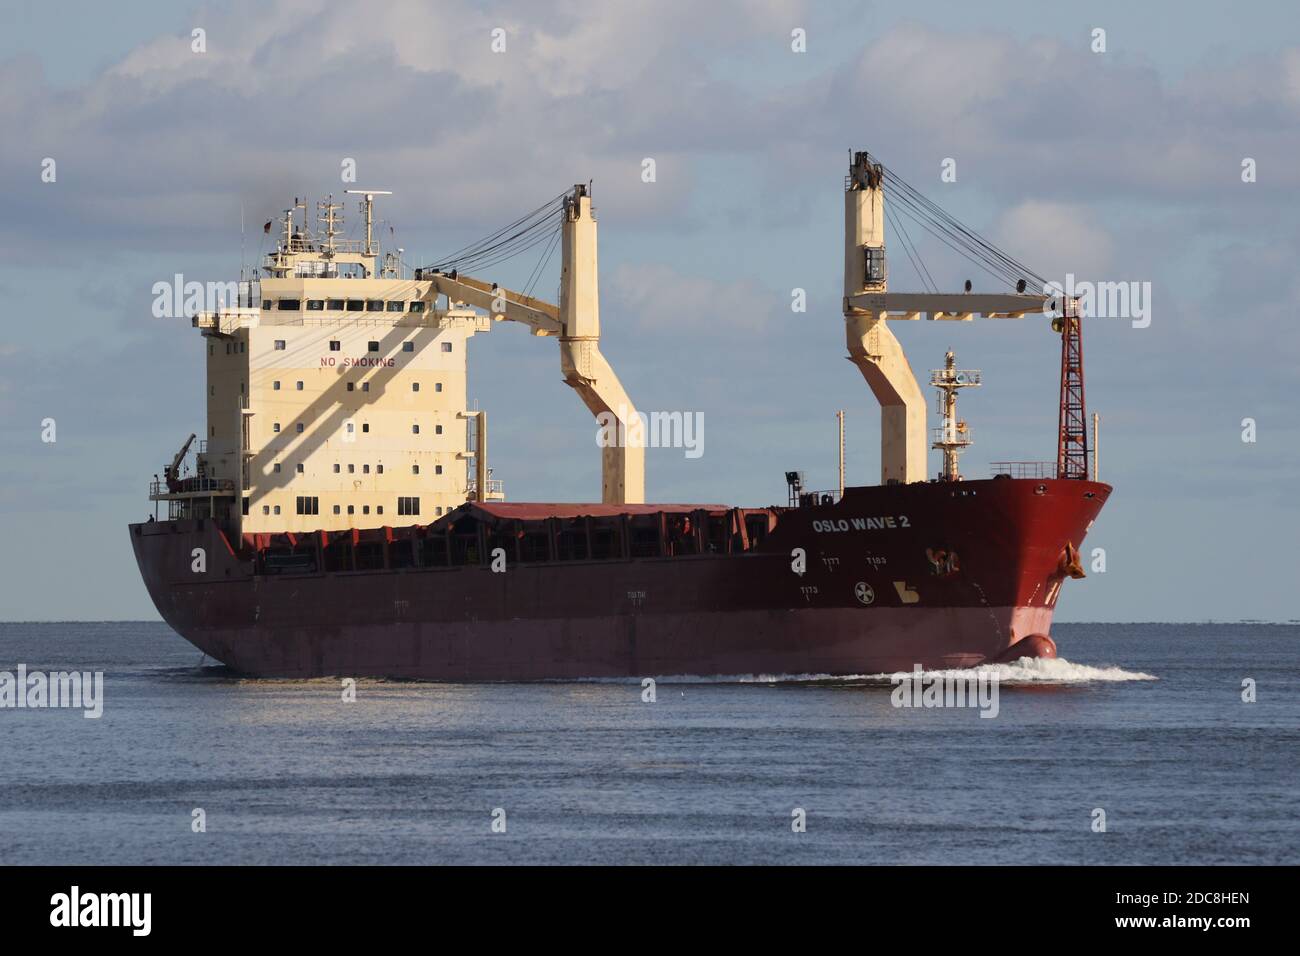 La nave da carico Oslo Wave 2 passerà Cuxhaven al mattino il 25 agosto 2020 in direzione del canale di Kiel. Foto Stock